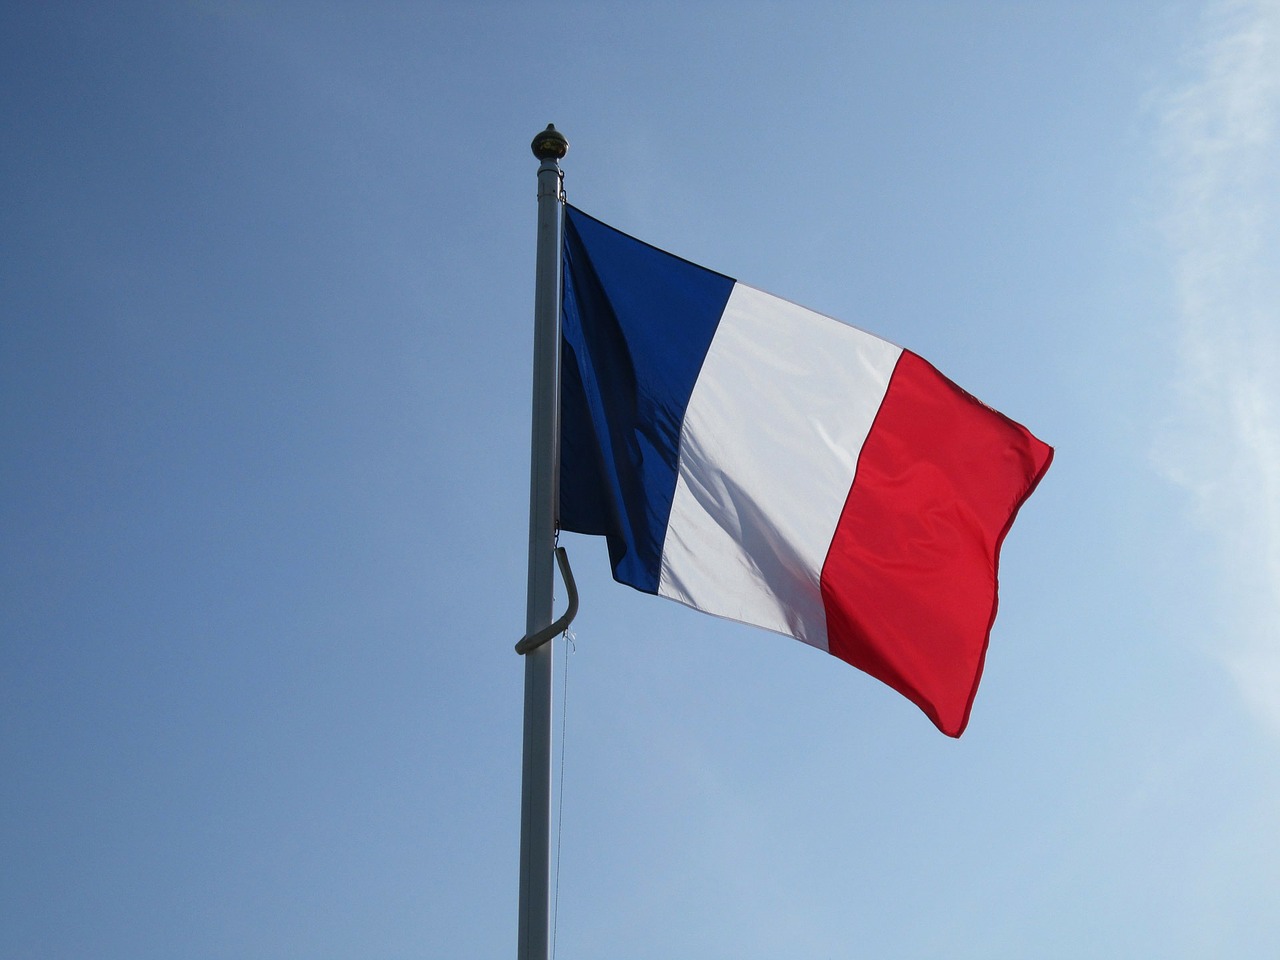 France: Etude du marché, stratégies d’entrée et veille économique